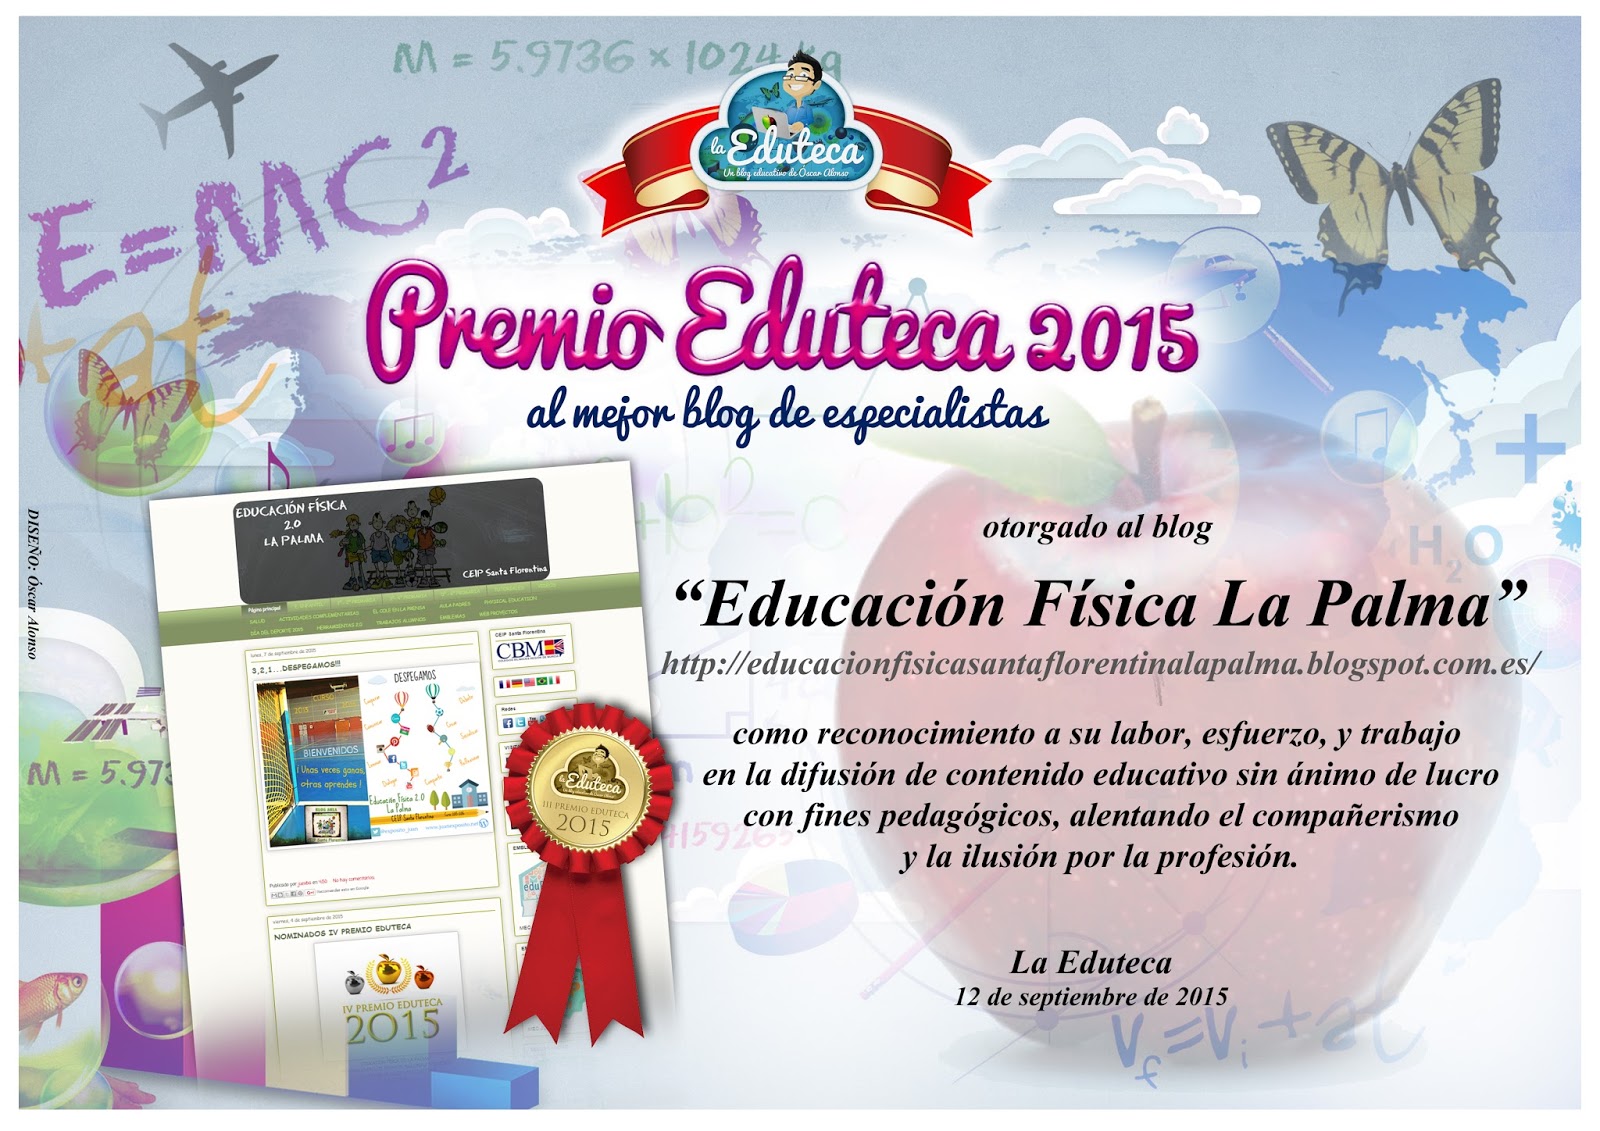 Premio Eduteca 2015 al mejor blog de especialistas